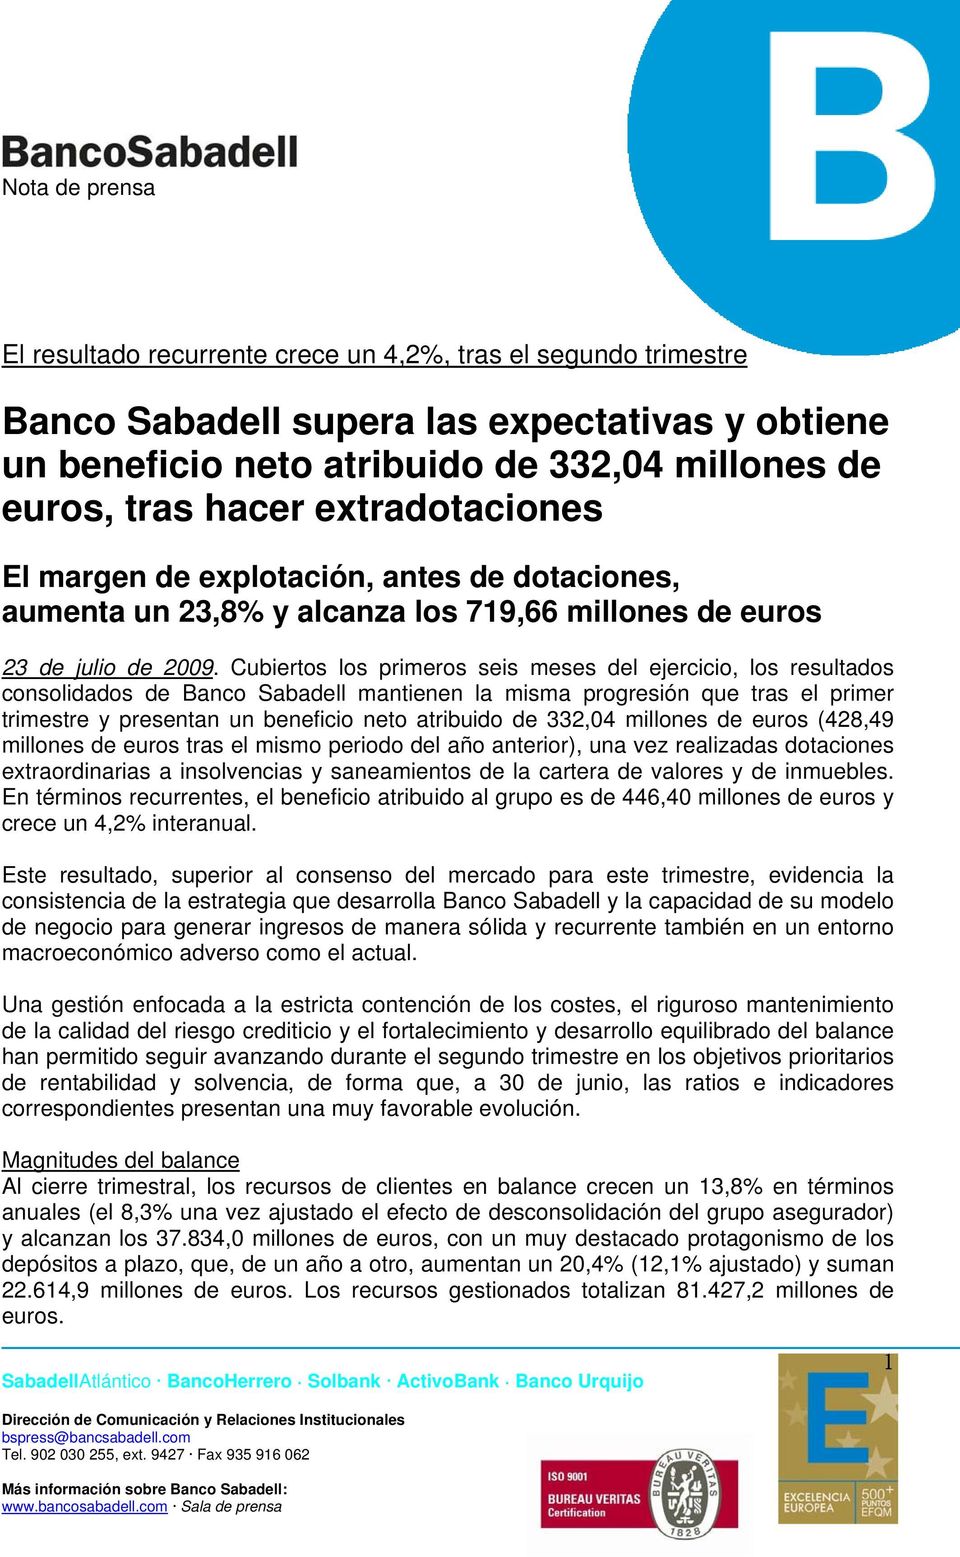 Cubiertos los primeros seis meses del ejercicio, los resultados consolidados de Banco Sabadell mantienen la misma progresión que tras el primer trimestre y presentan un beneficio neto atribuido de